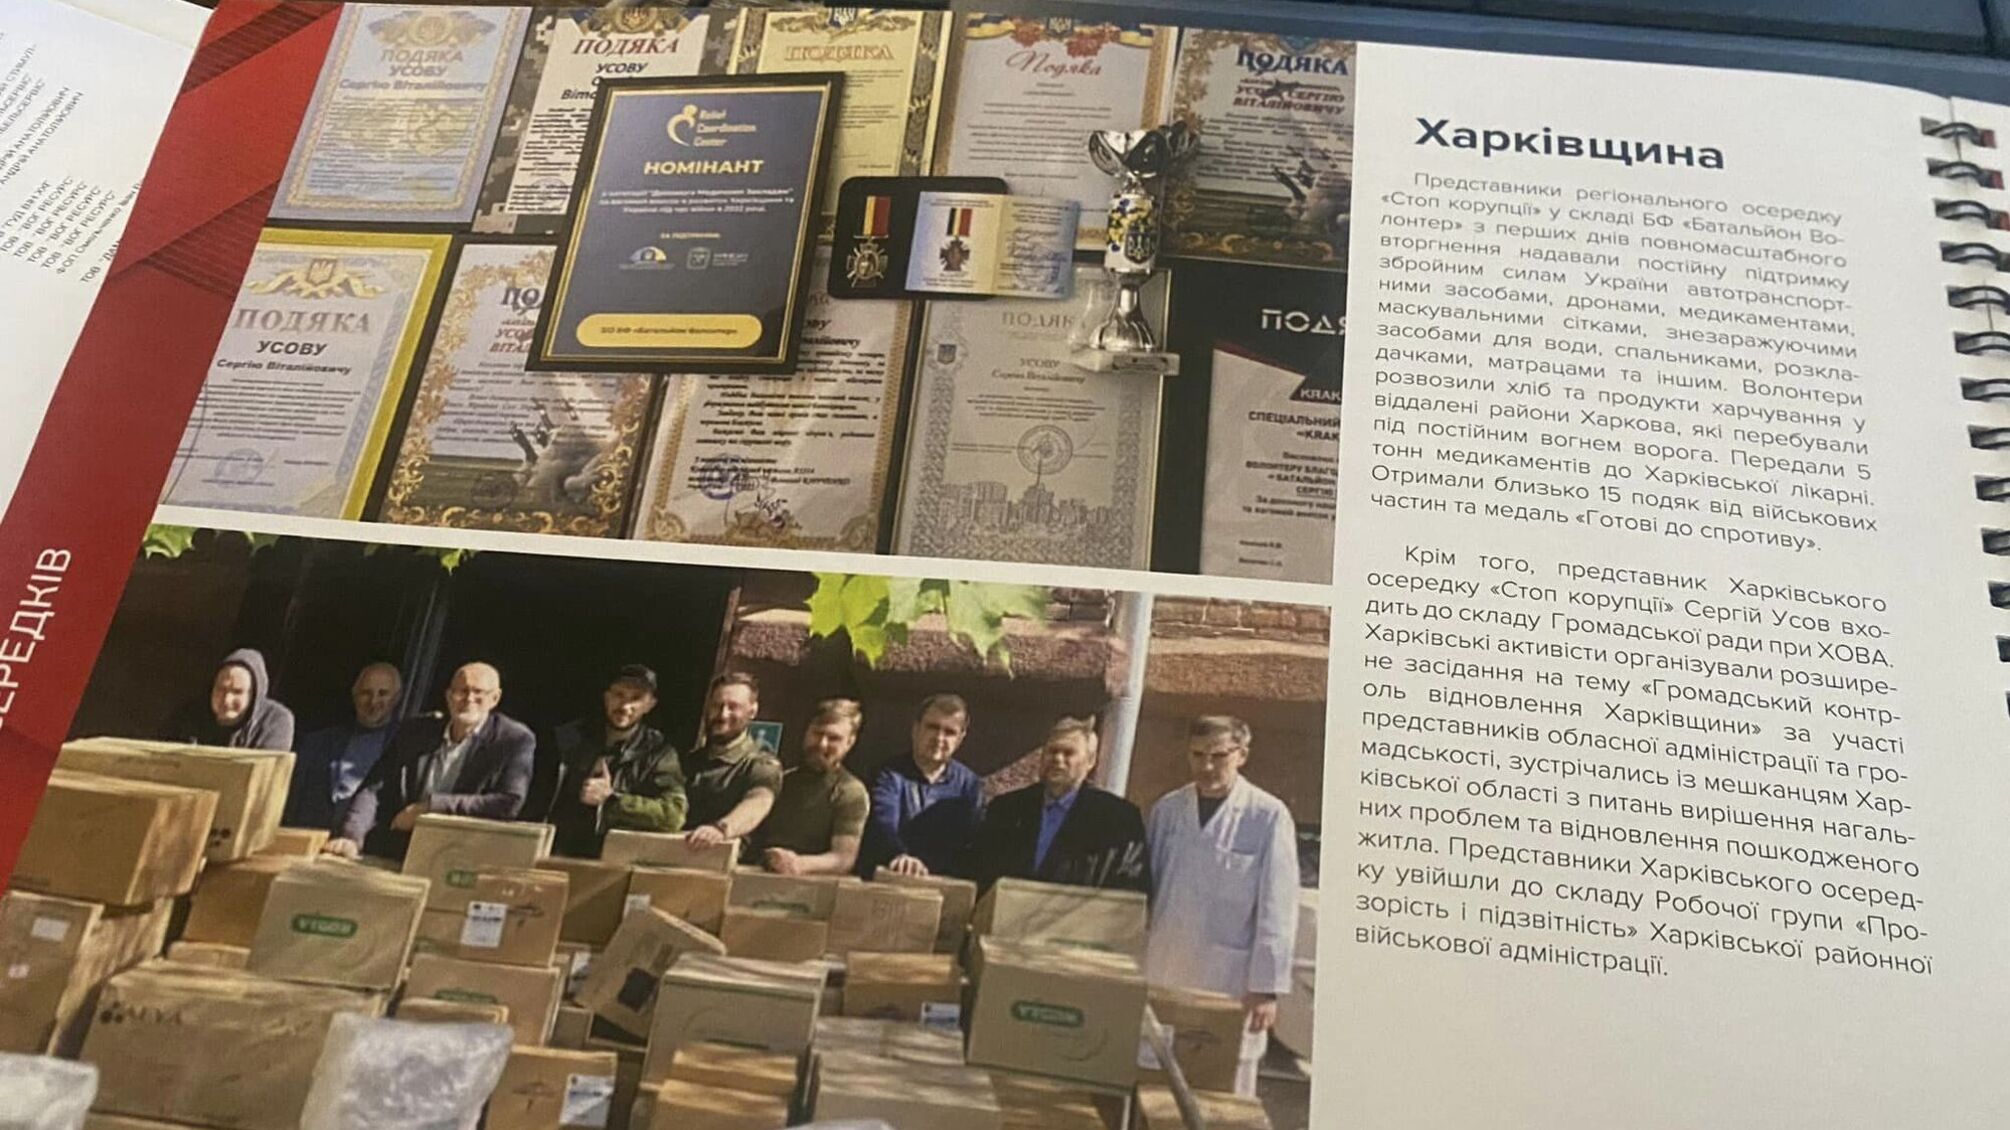 Общественный контроль и волонтерская помощь: как работает 'Стоп коррупции' в Харьковской области